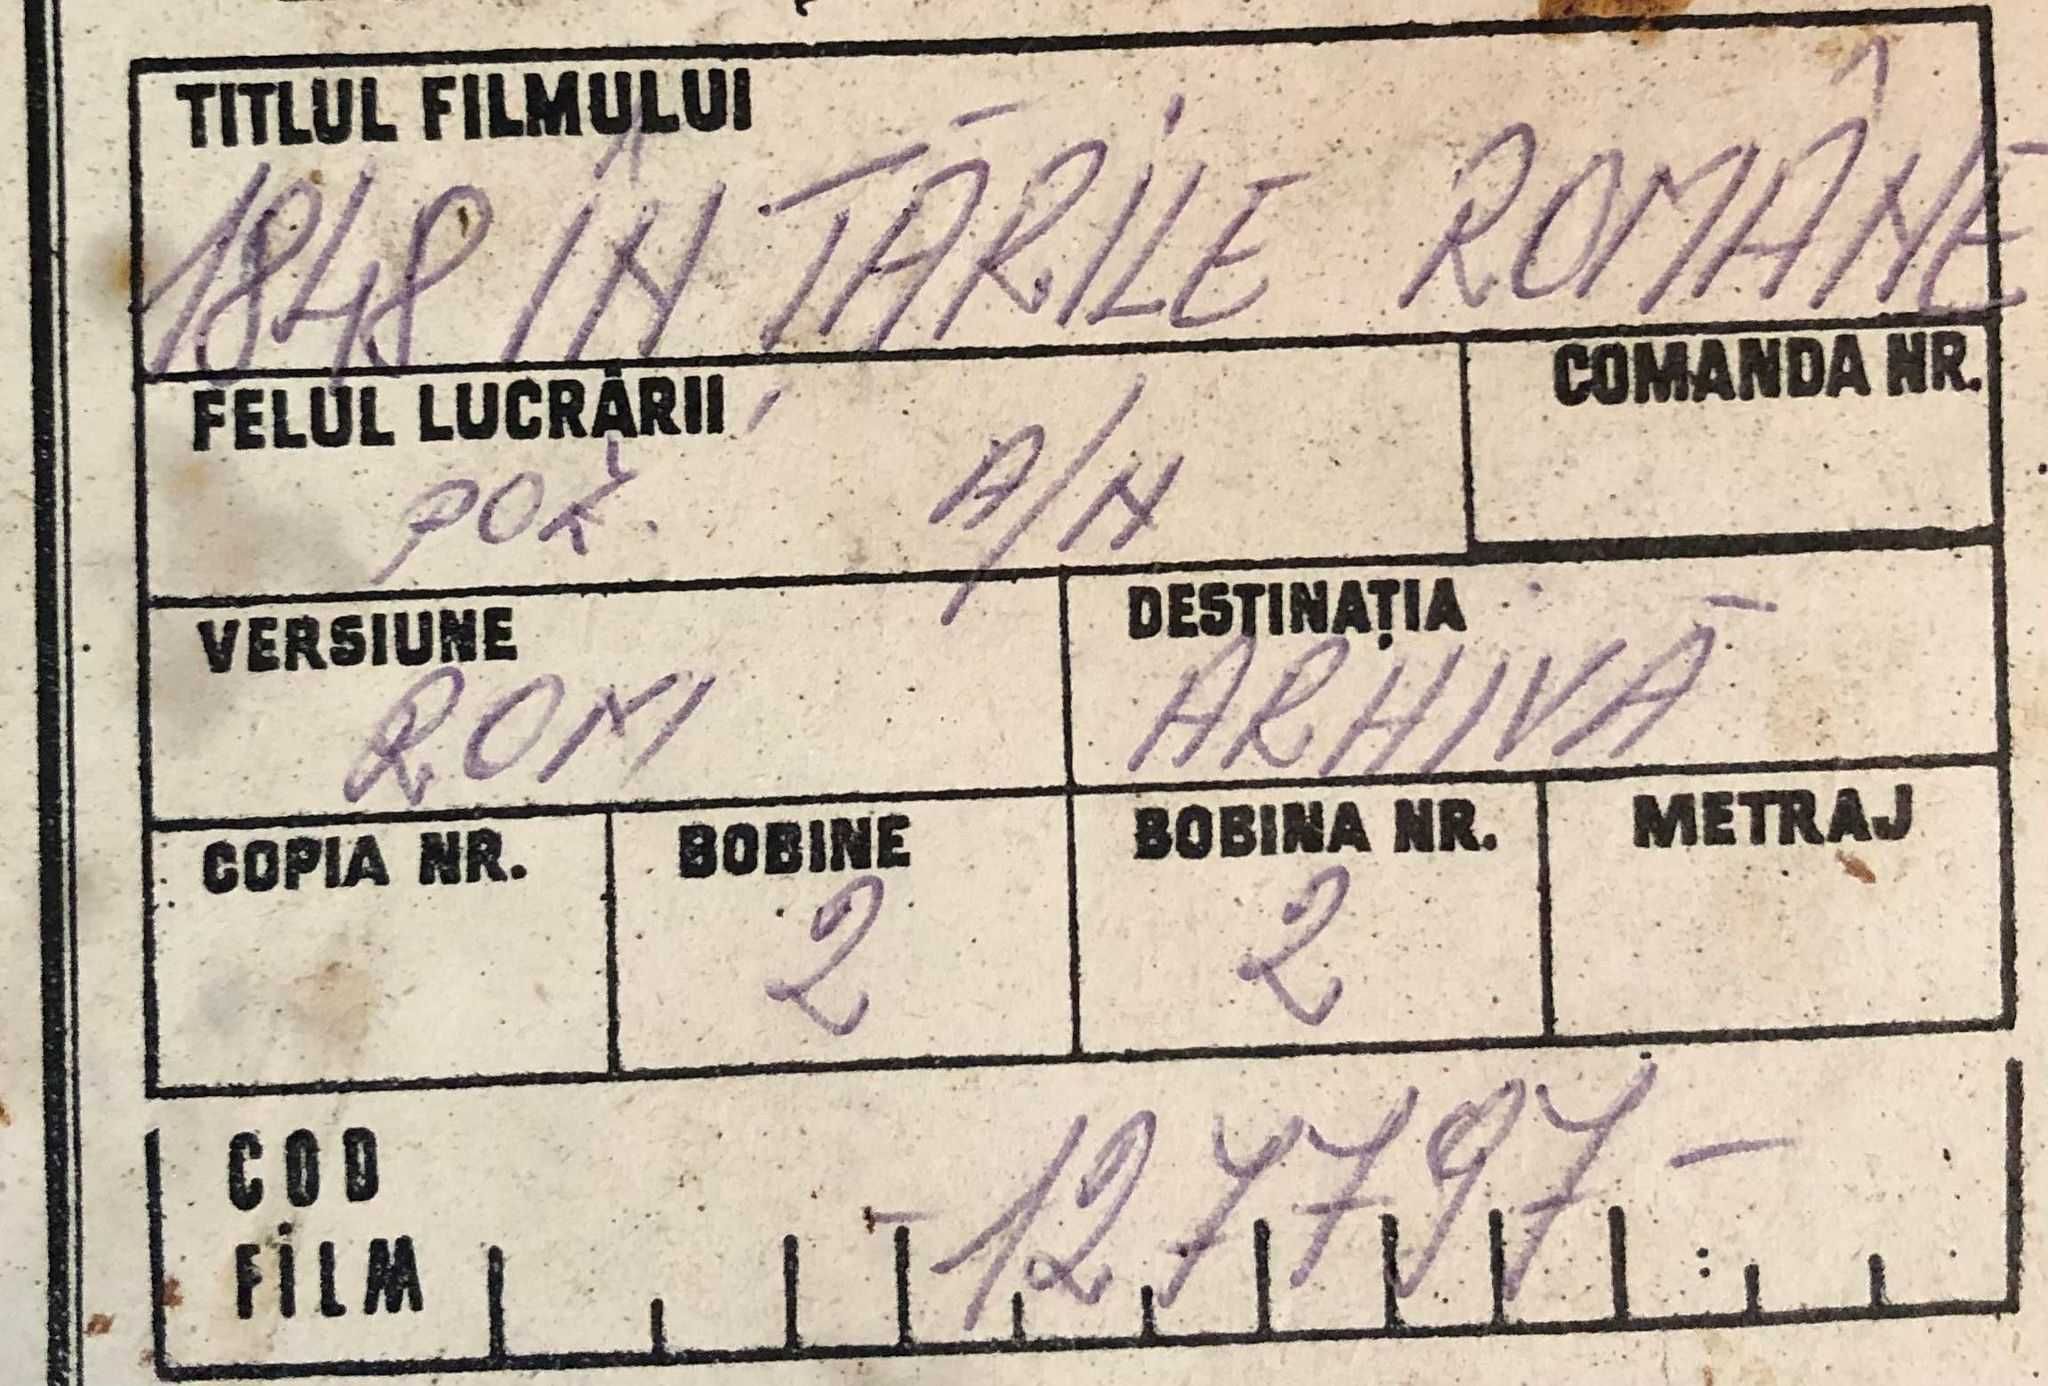 Filme vechi romanesti pe pelicula 35 mm